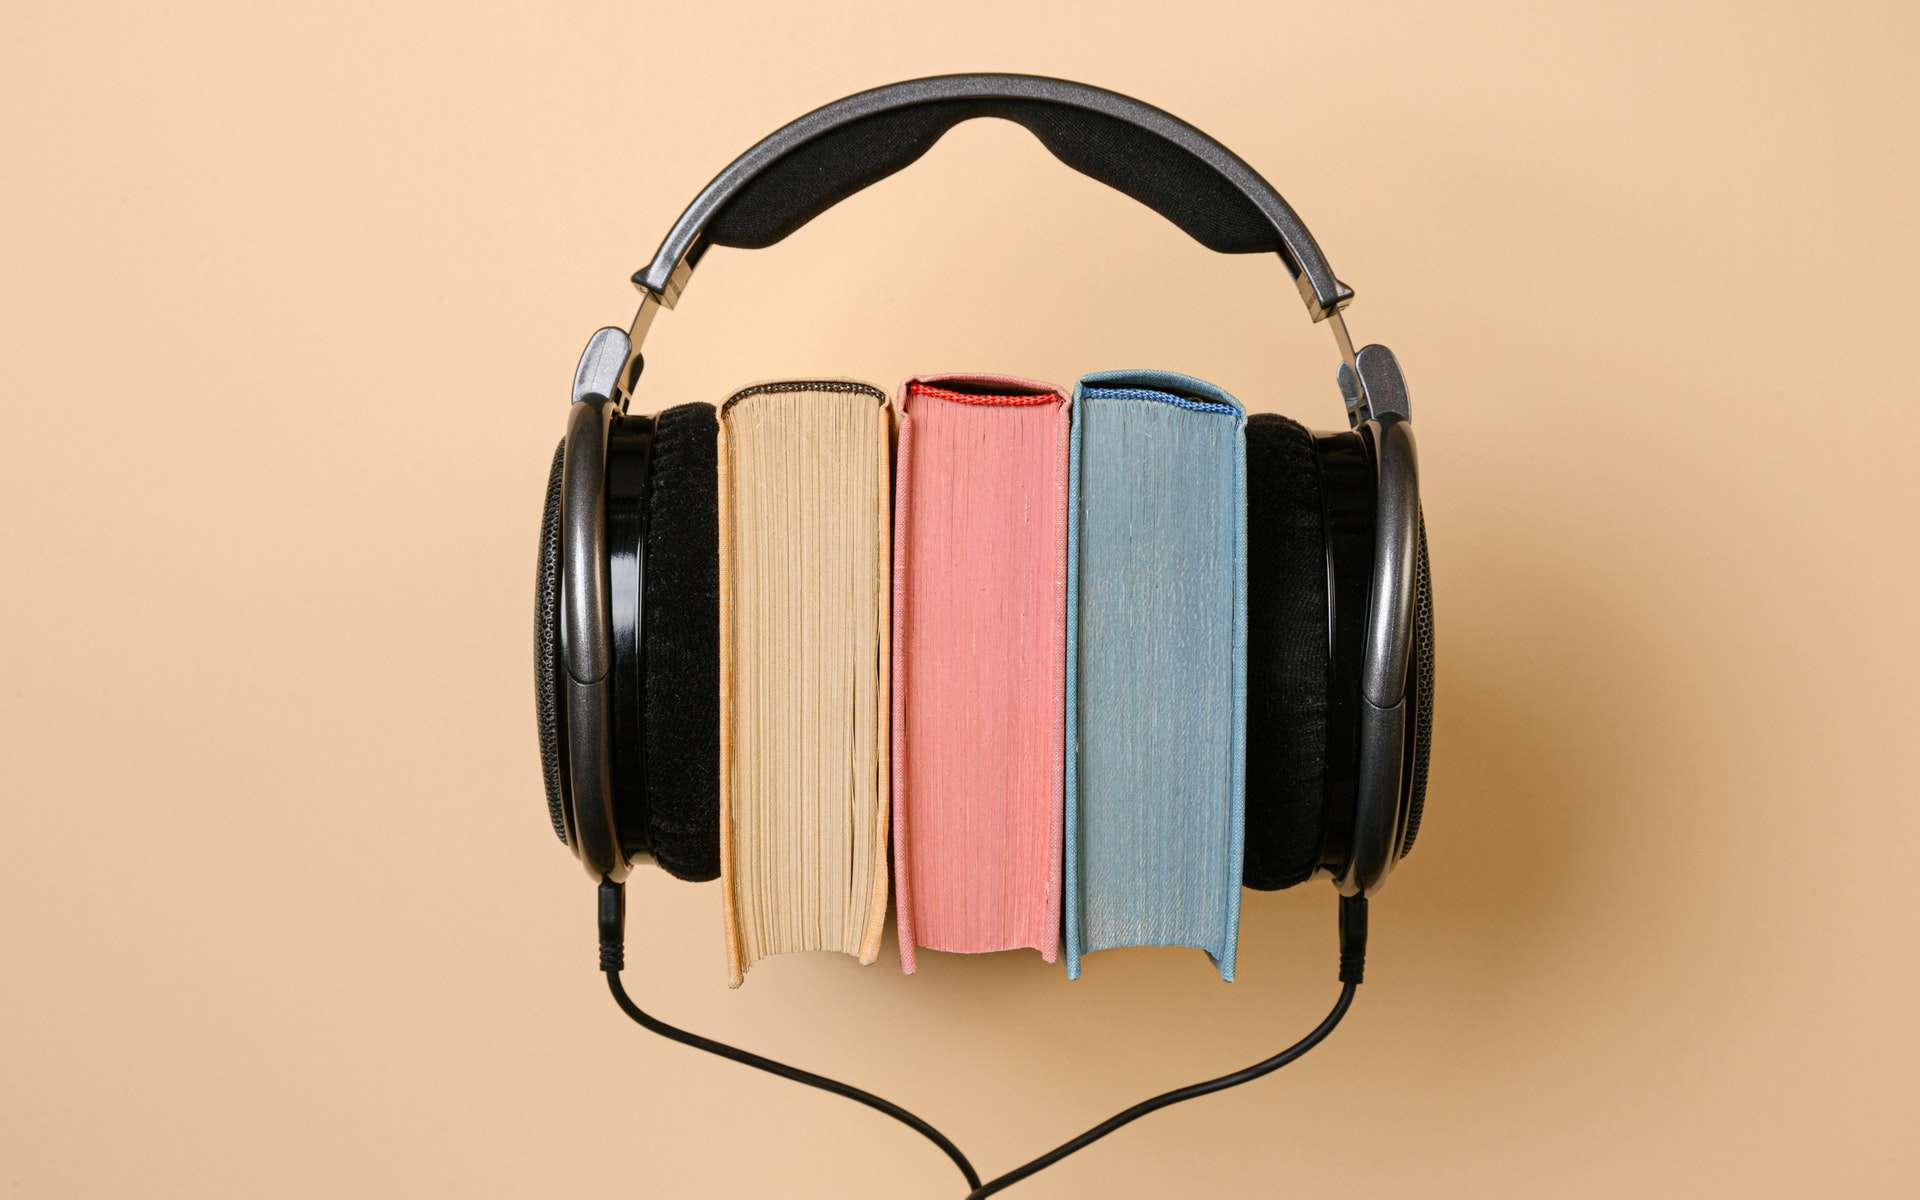 Comment bien choisir votre livre audio ? © Stas Knop, Pexels